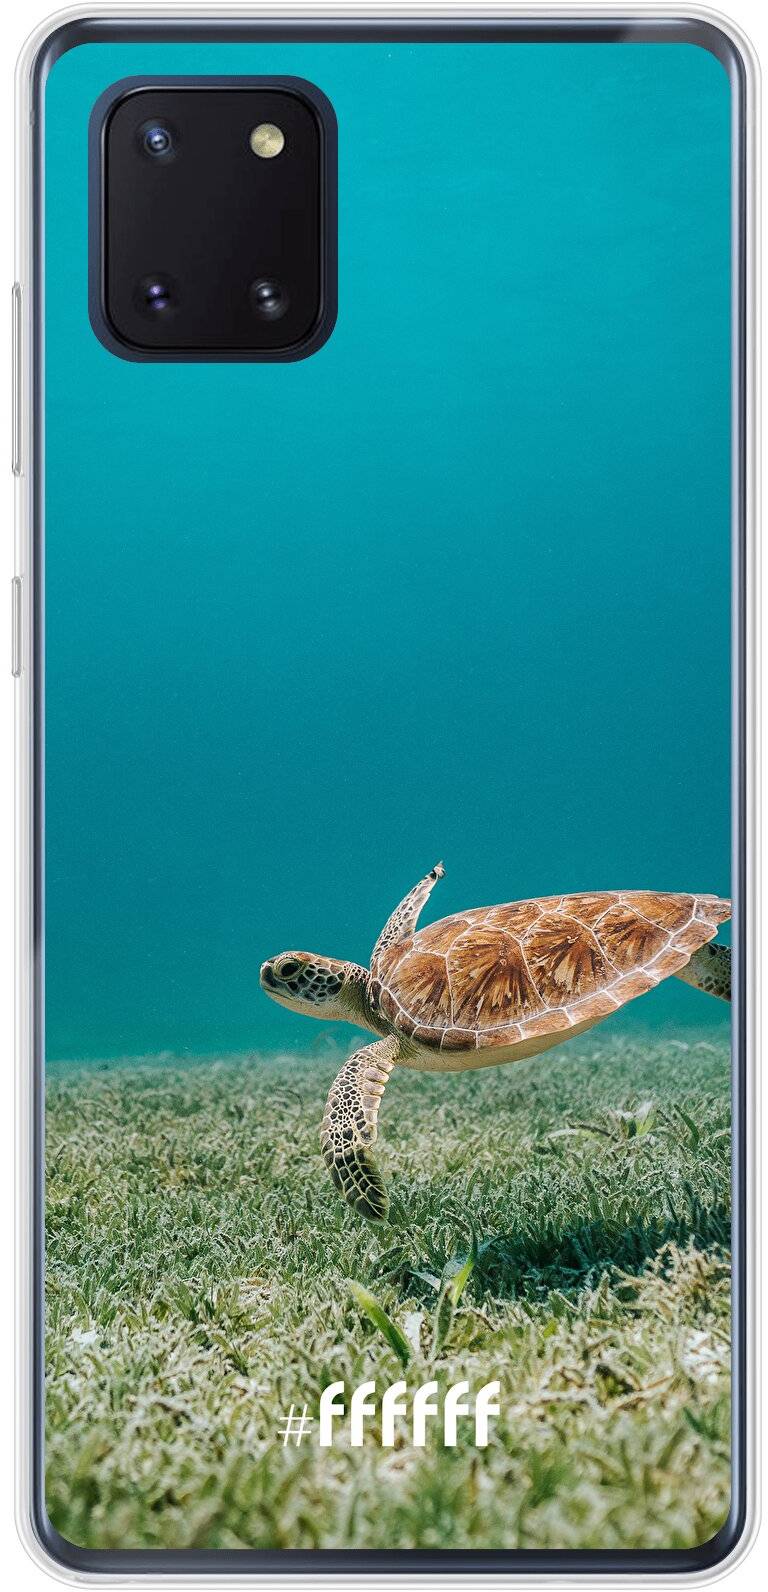 Turtle Galaxy Note 10 Lite